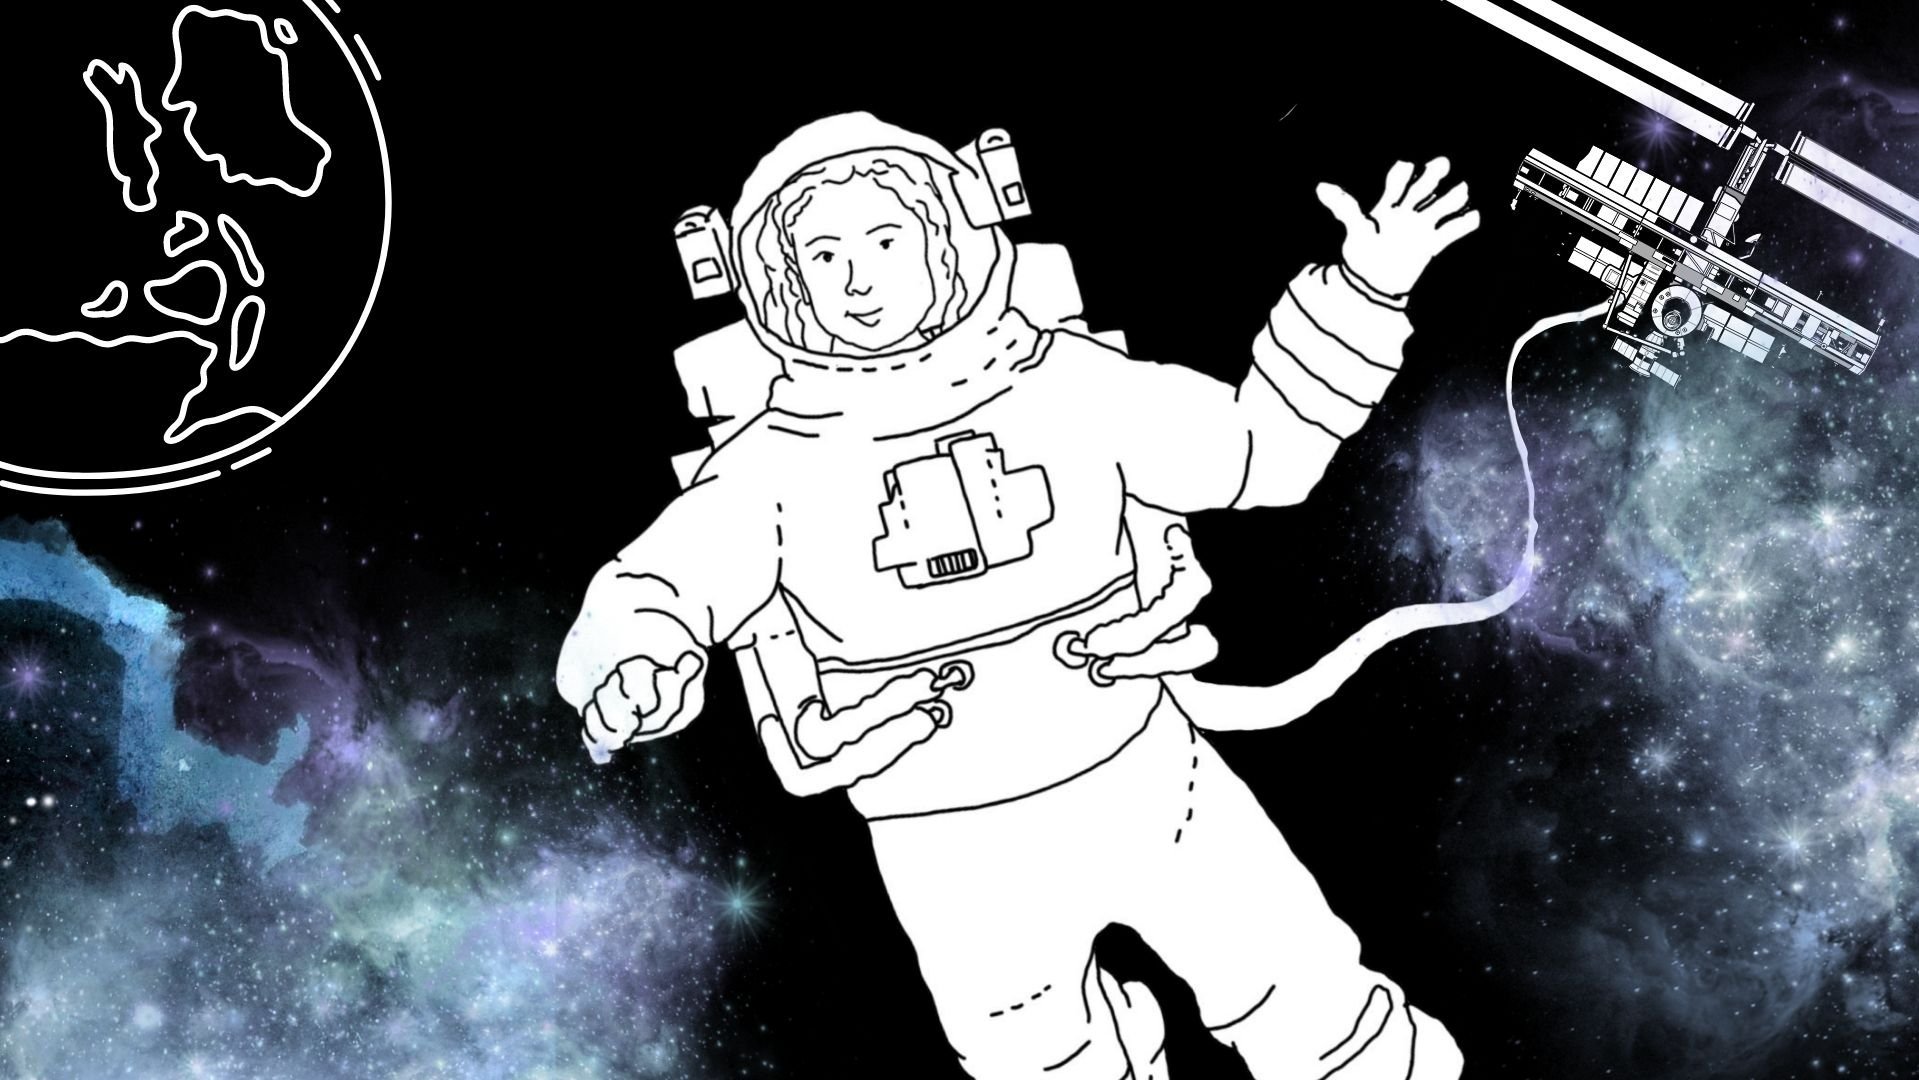 Eine schwarz-weiß Zeichnung einer Astronautin, im Hintergrund ist eine bunte Galaxie zu sehen.